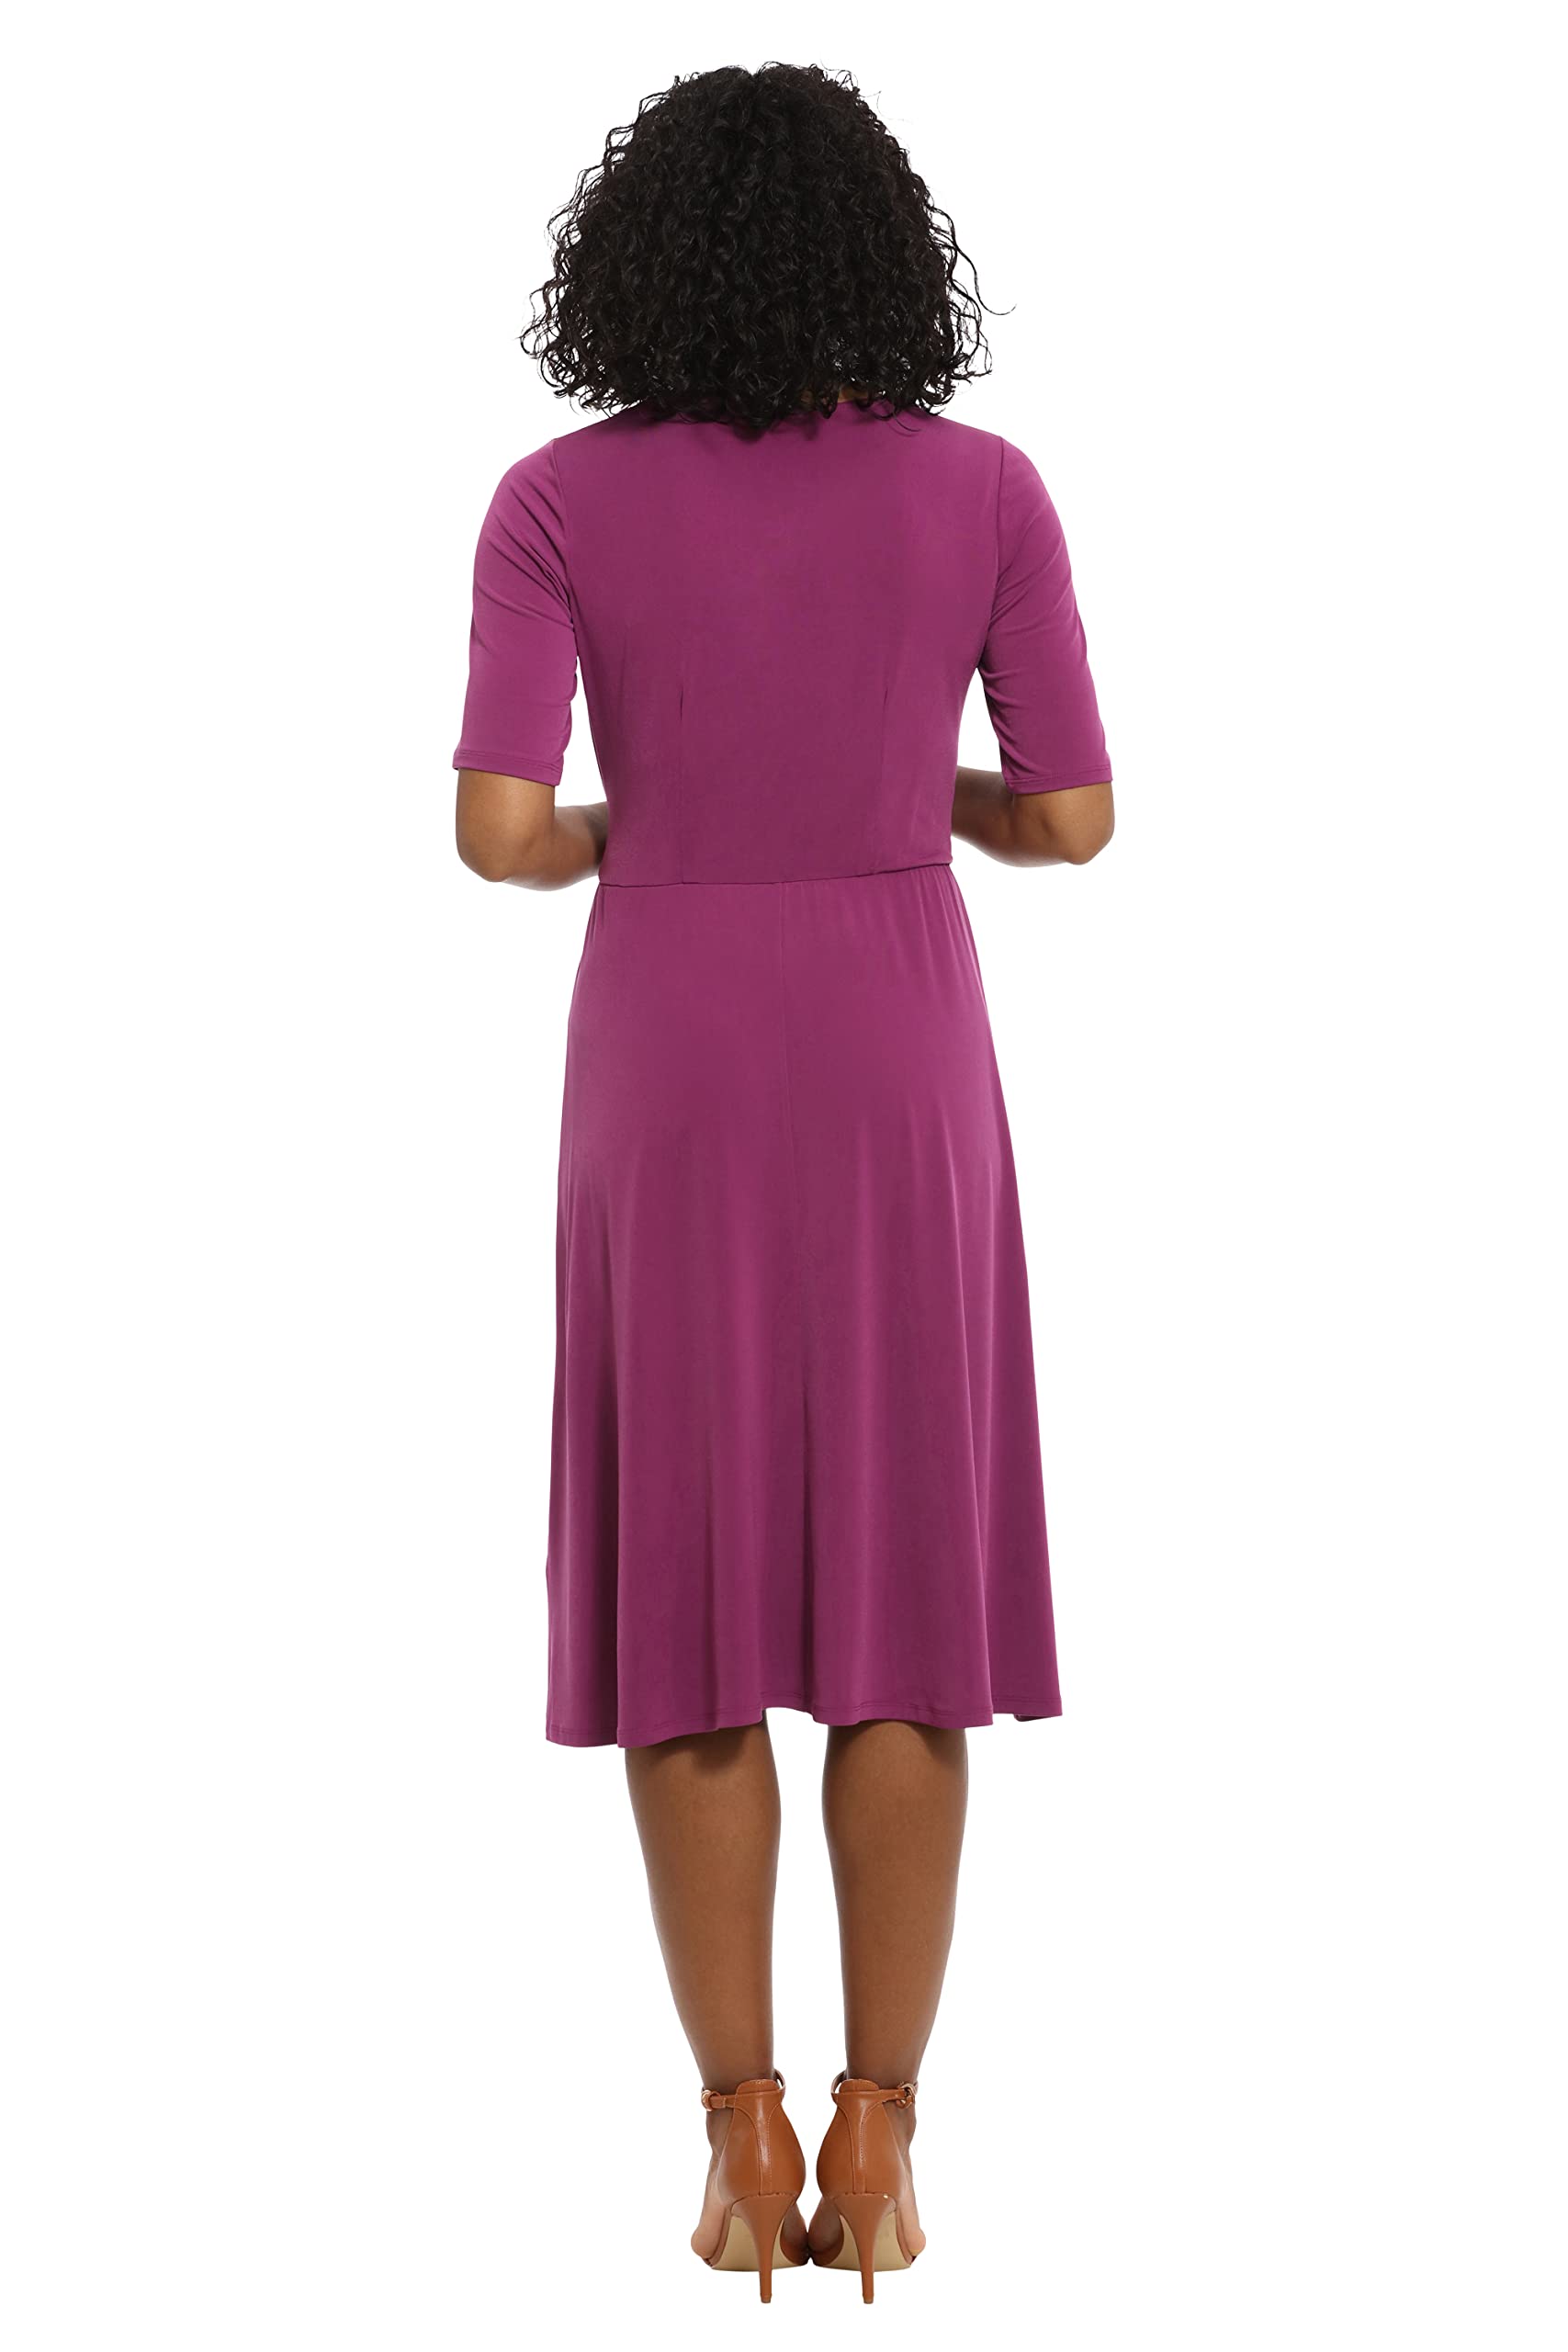 London Times Women's Side Tie Flattering Midi Length Chic Versatile Matte Jersey Dress